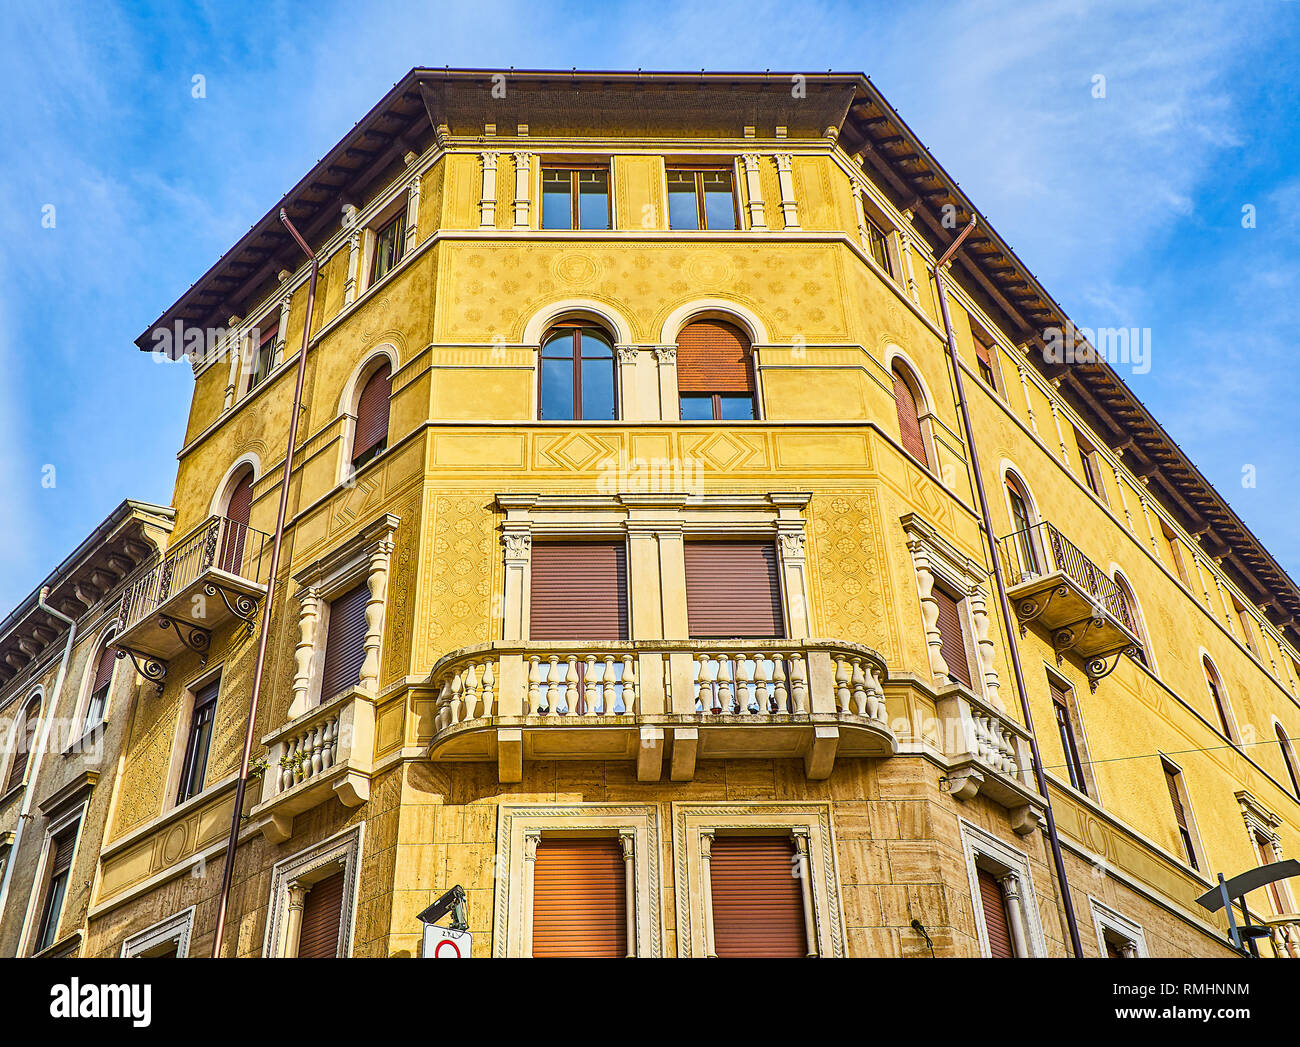 Neoclassical facade of an antique European building. Bergamo, Lombardy, Italy. Stock Photo